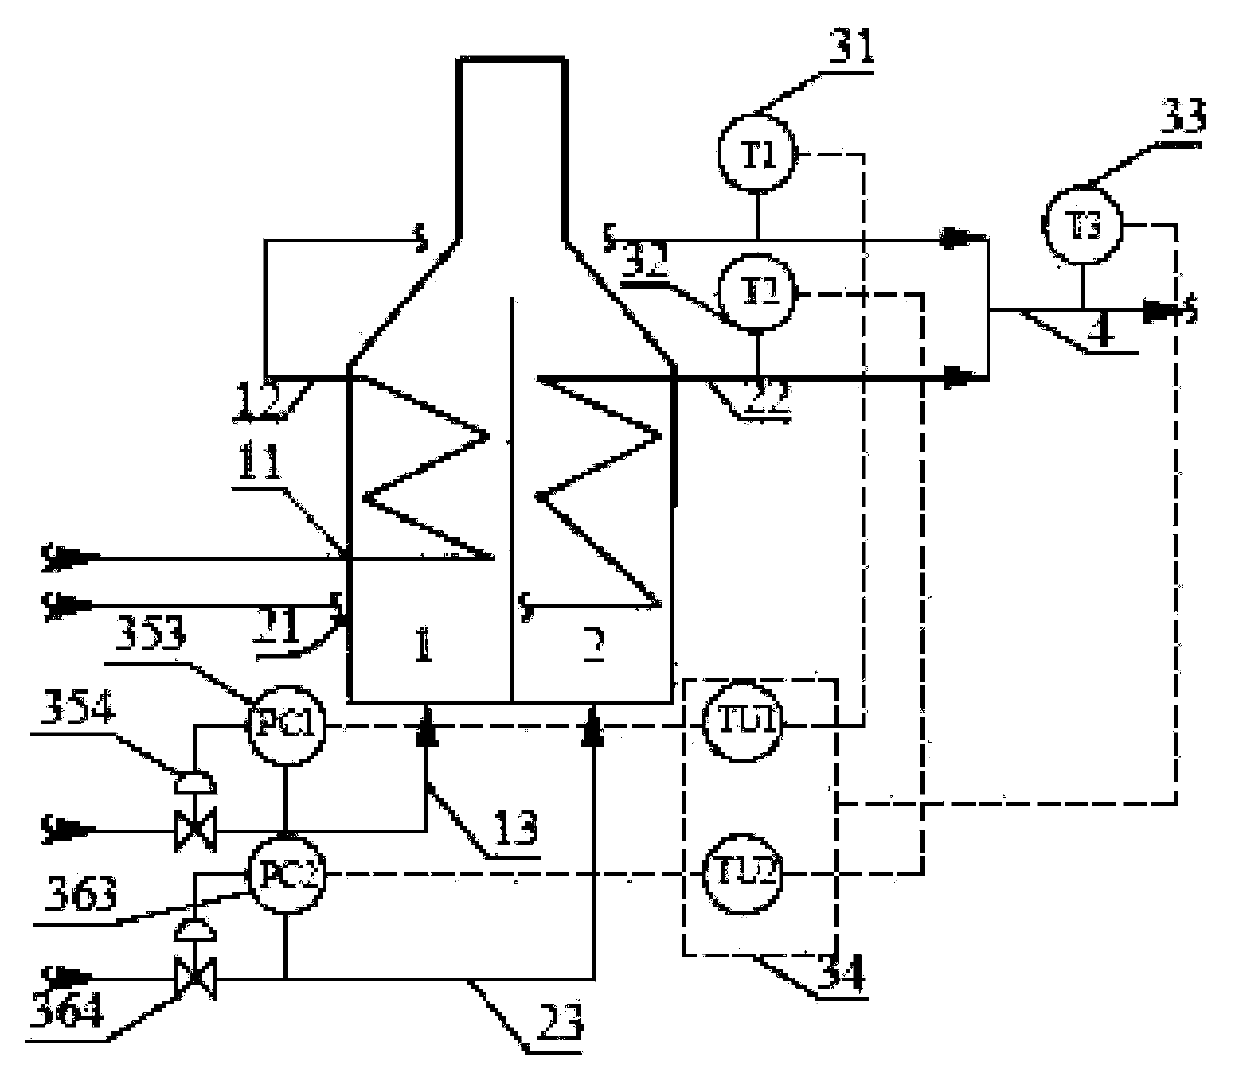 Fuel adjusting system for heating furnace, fuel adjusting method and heating furnace